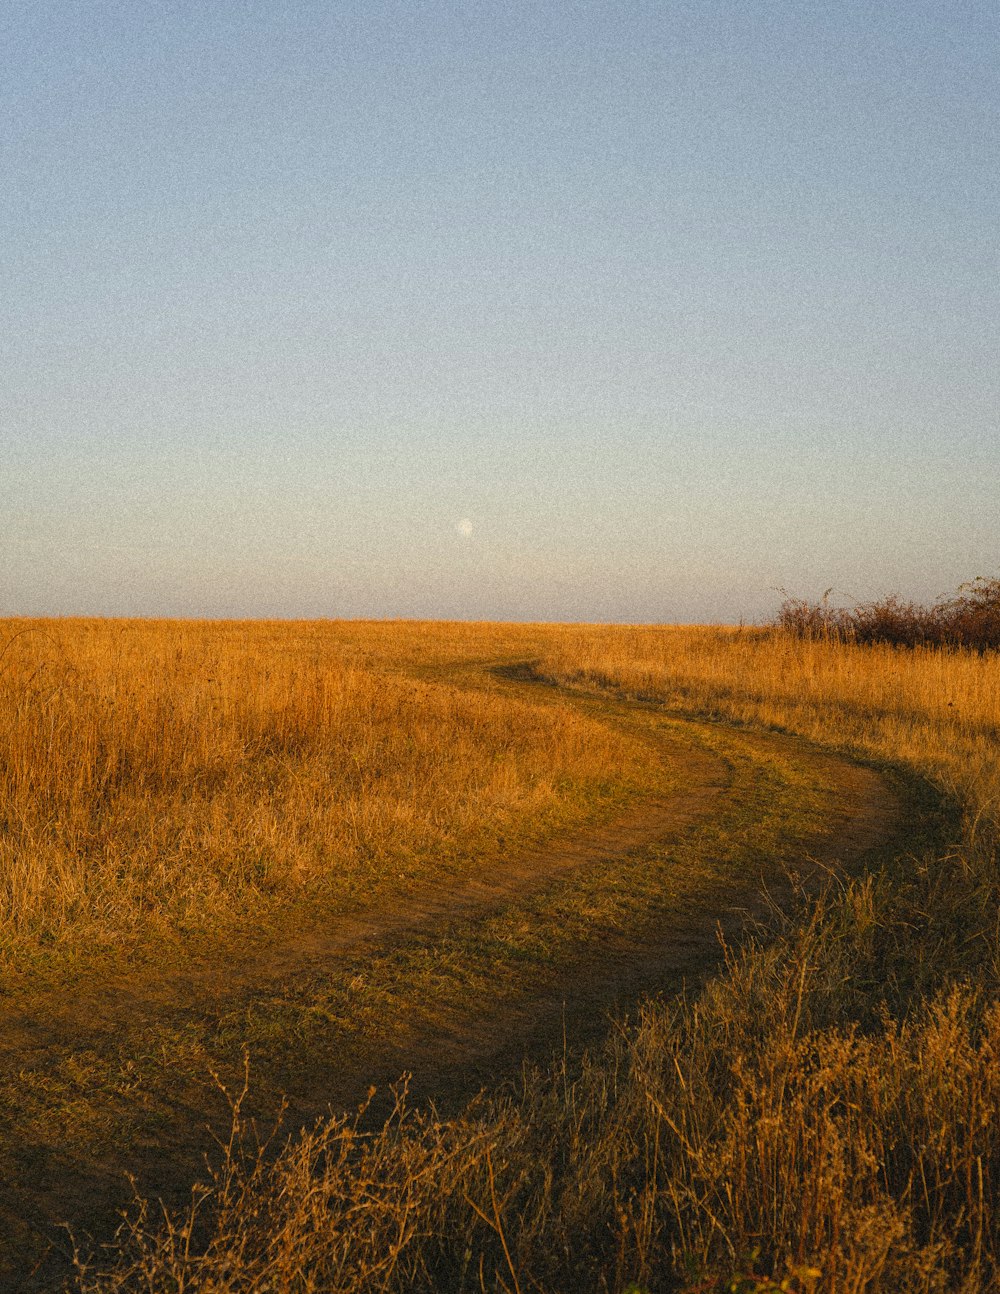 Un camino de tierra que atraviesa un campo de hierba seca